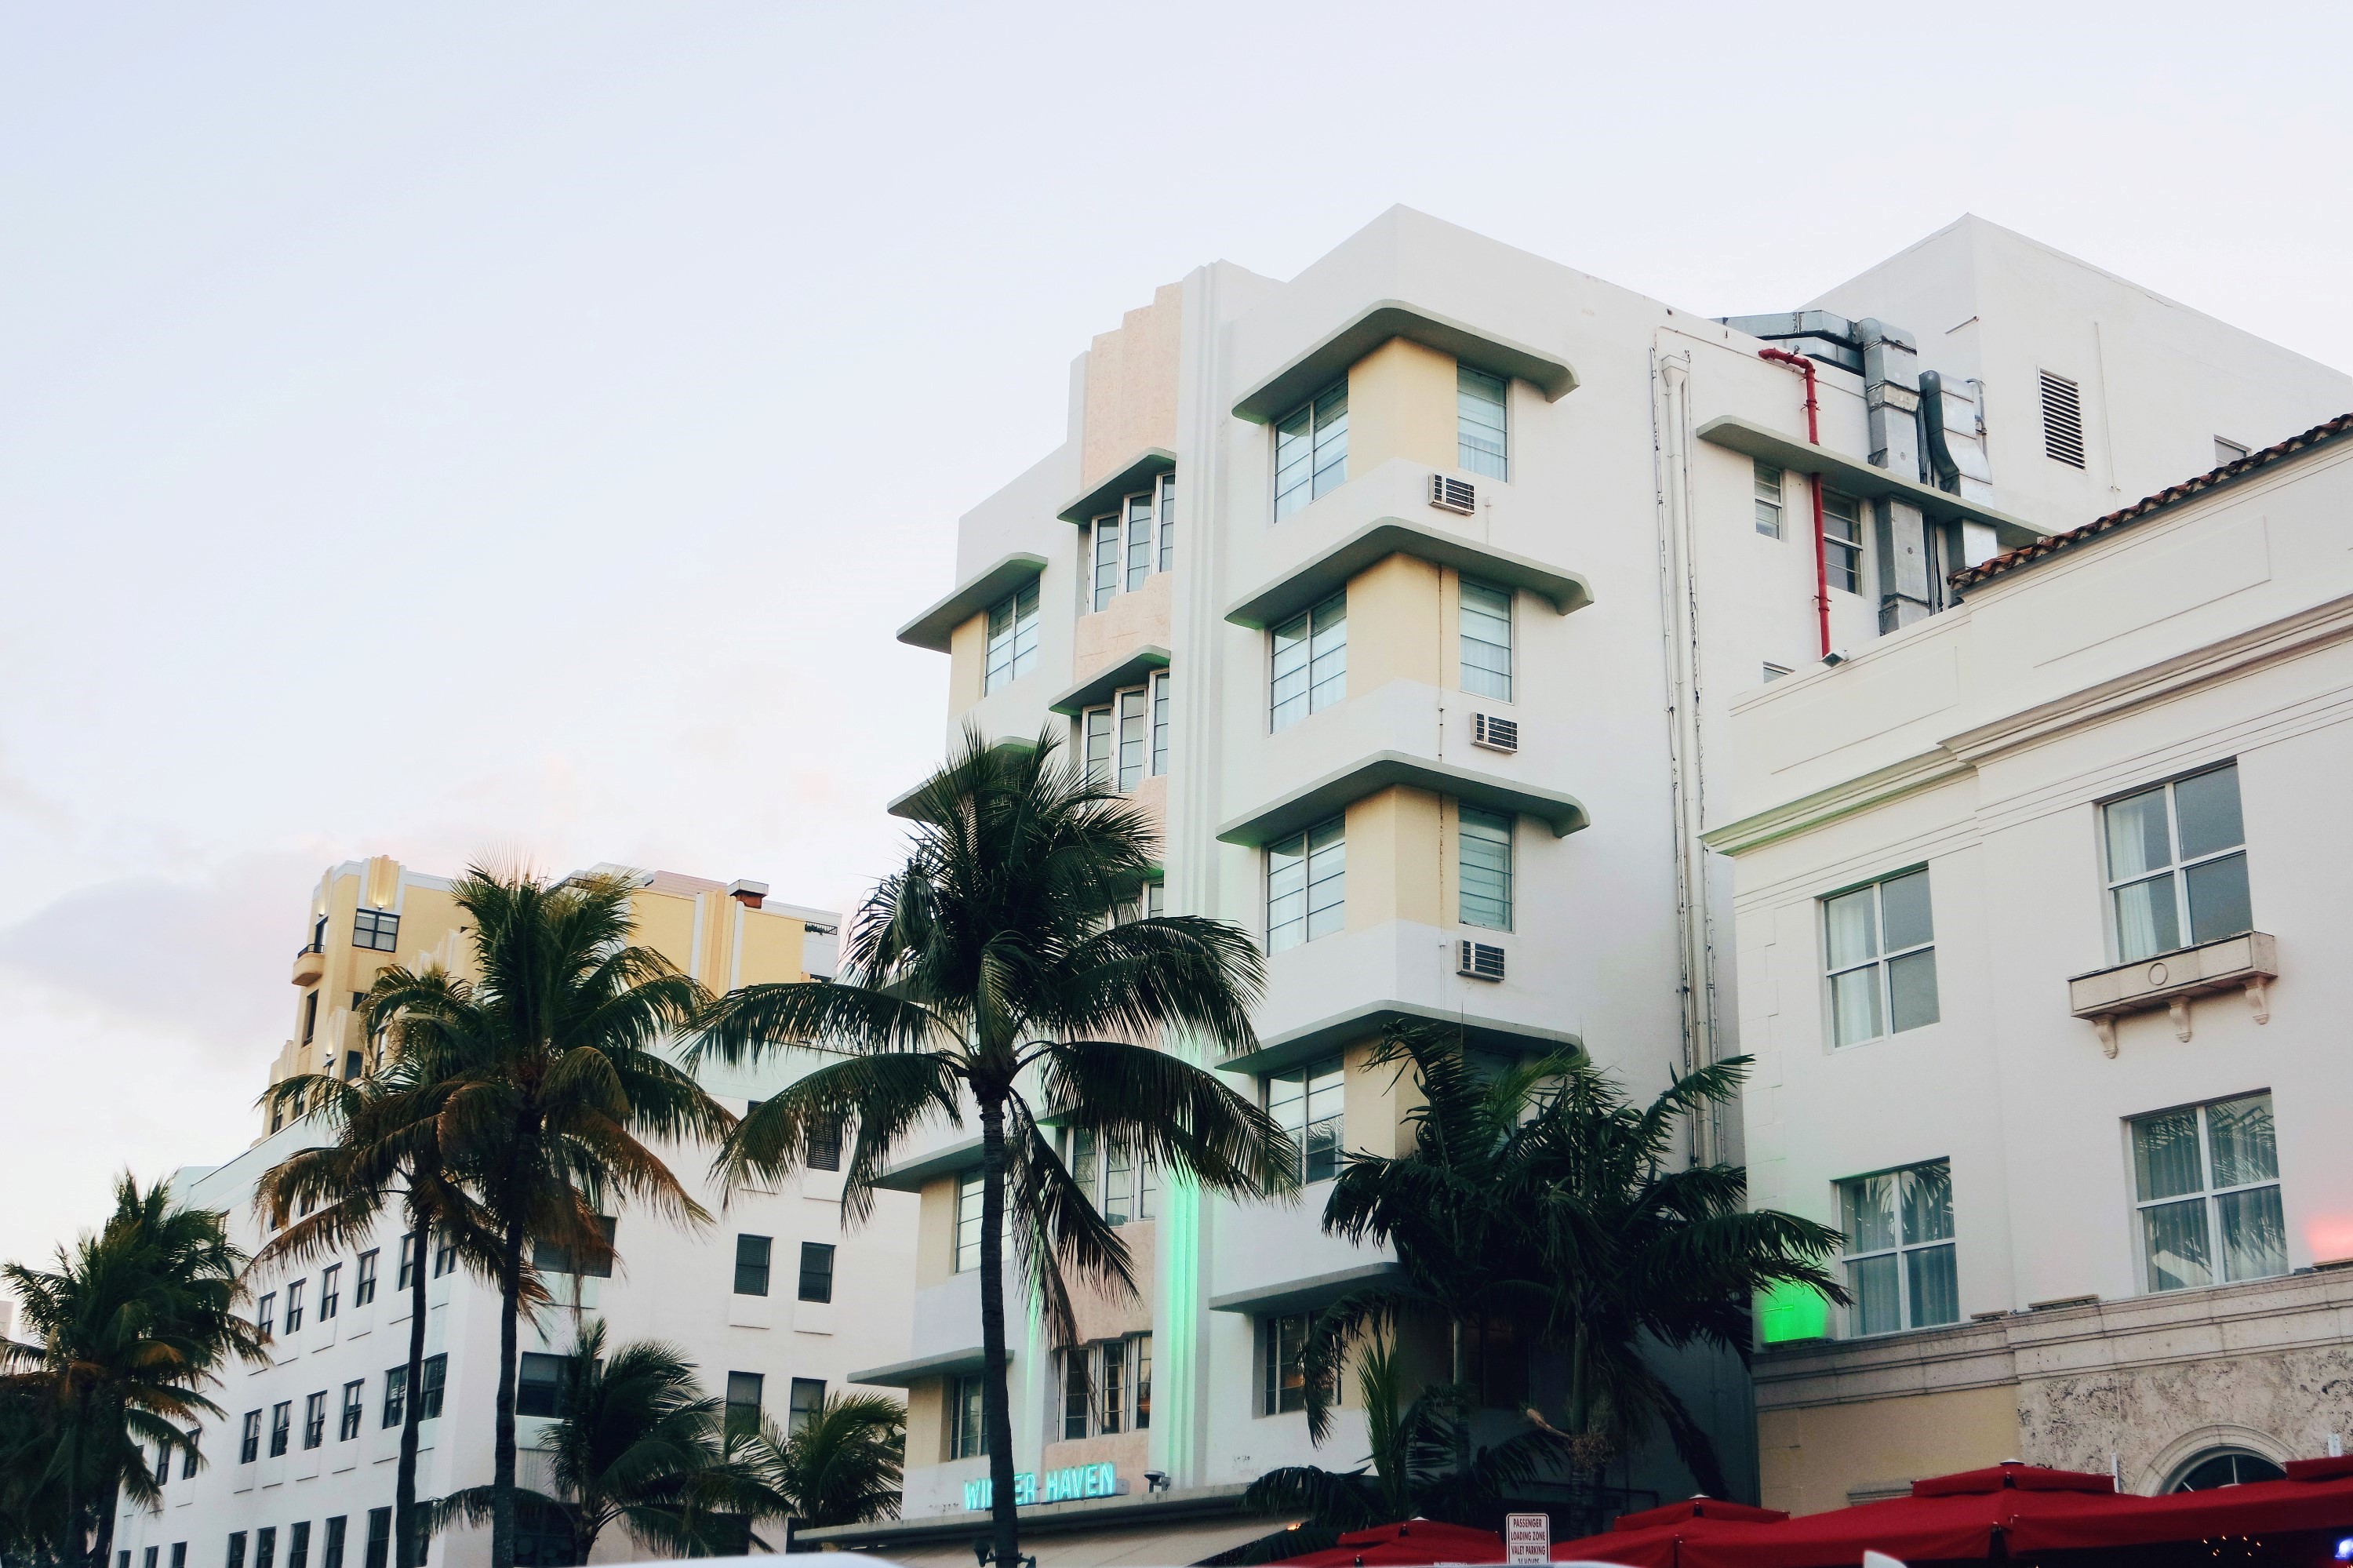 Art Deco in Miami Beach